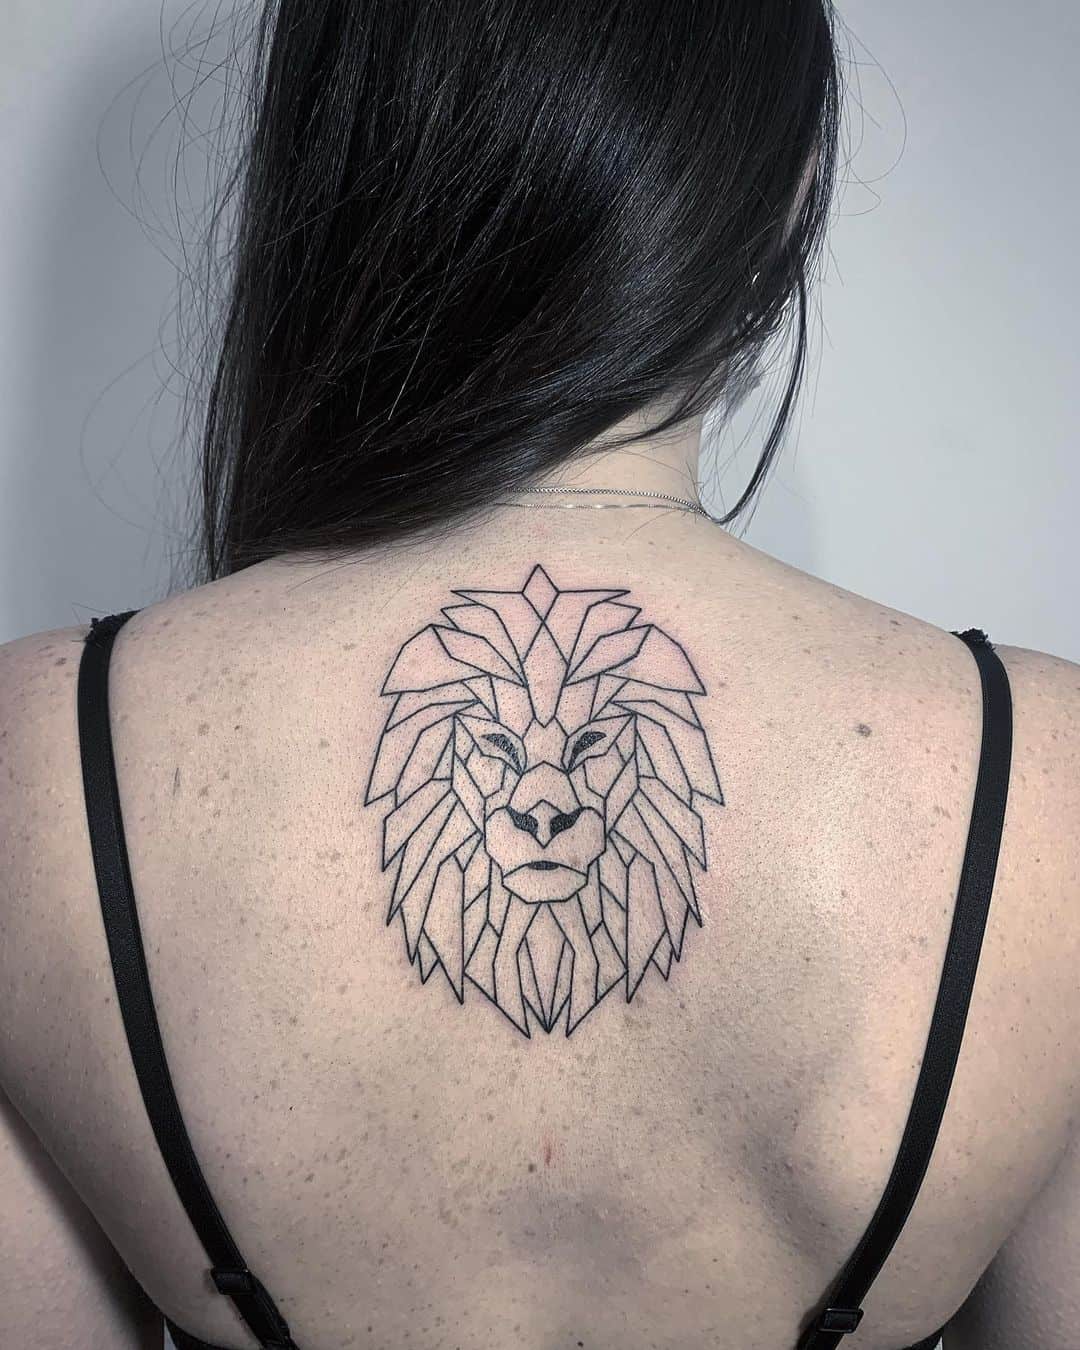 Fineline lion geometric tattoo by trick tattoo artist